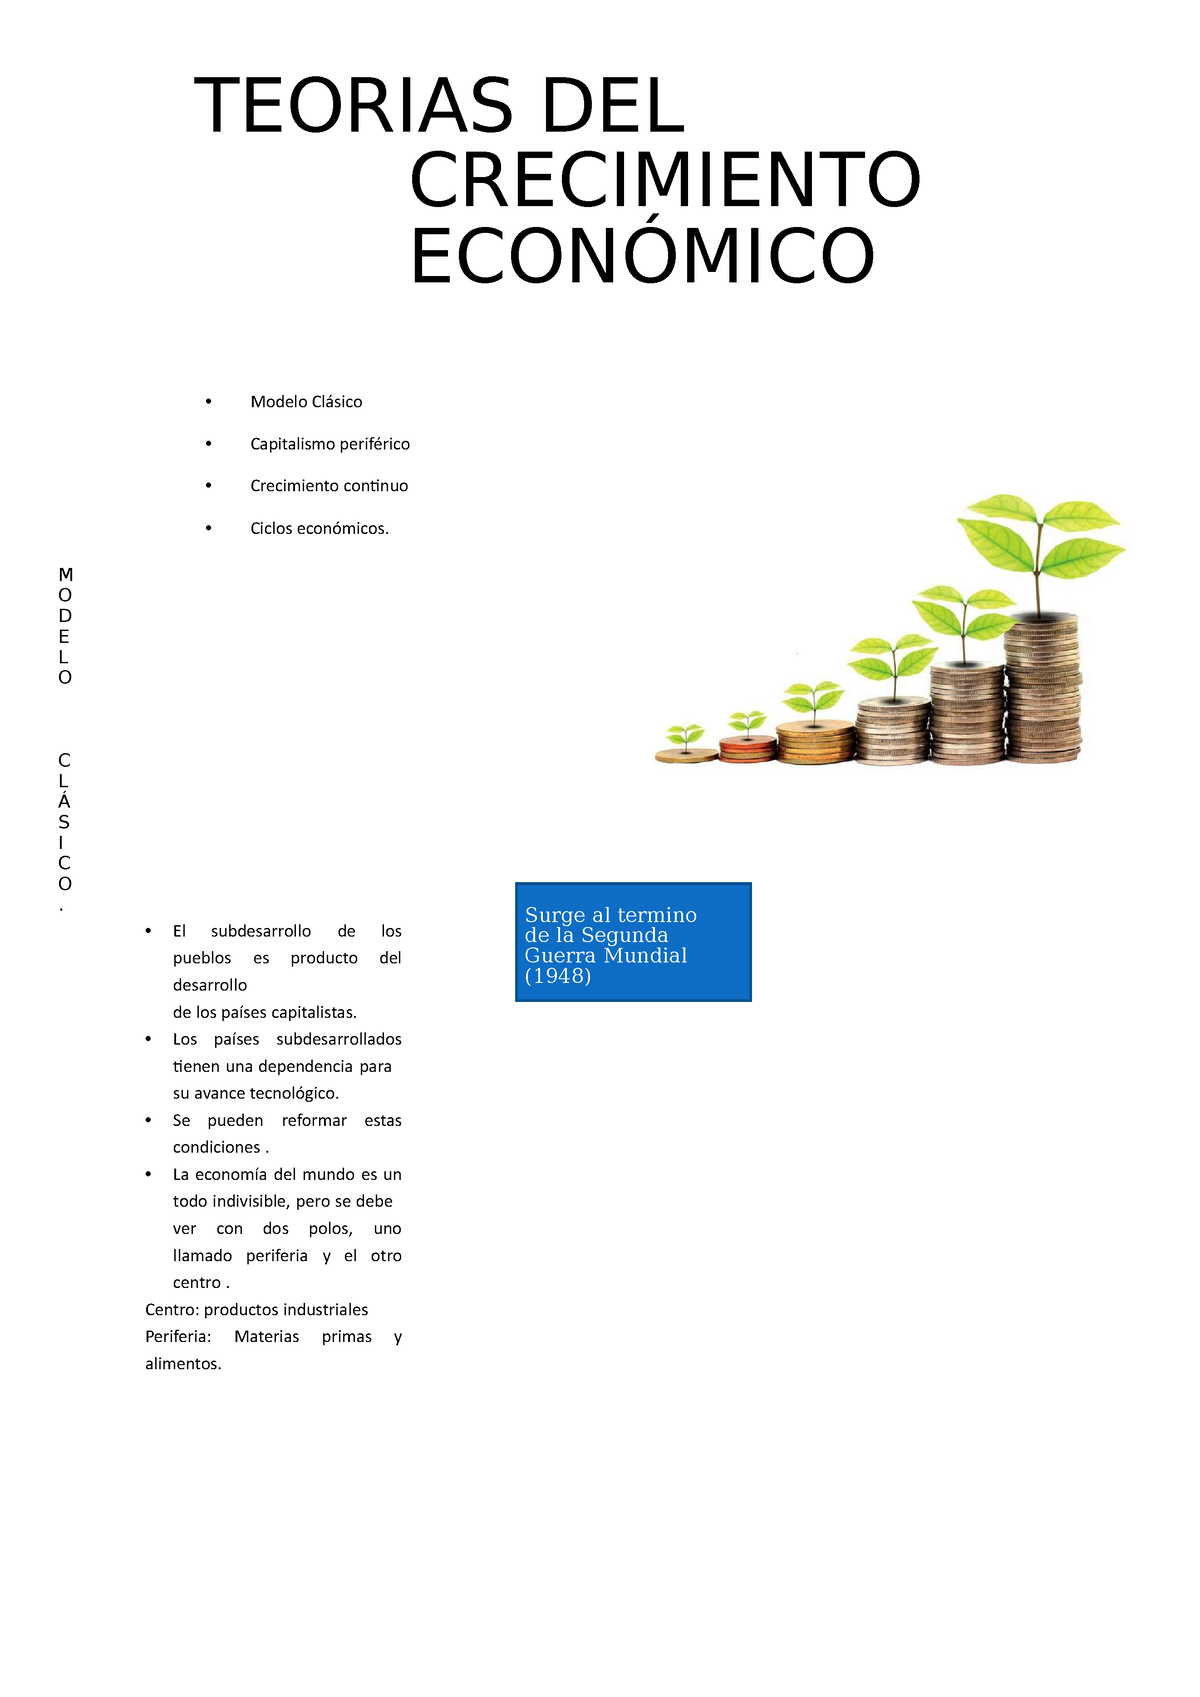 123456789 - Desarrollo económico 4 fases - TEORIAS DEL CRECIMIENTO  ECONÓMICO Modelo Clásico - Studocu